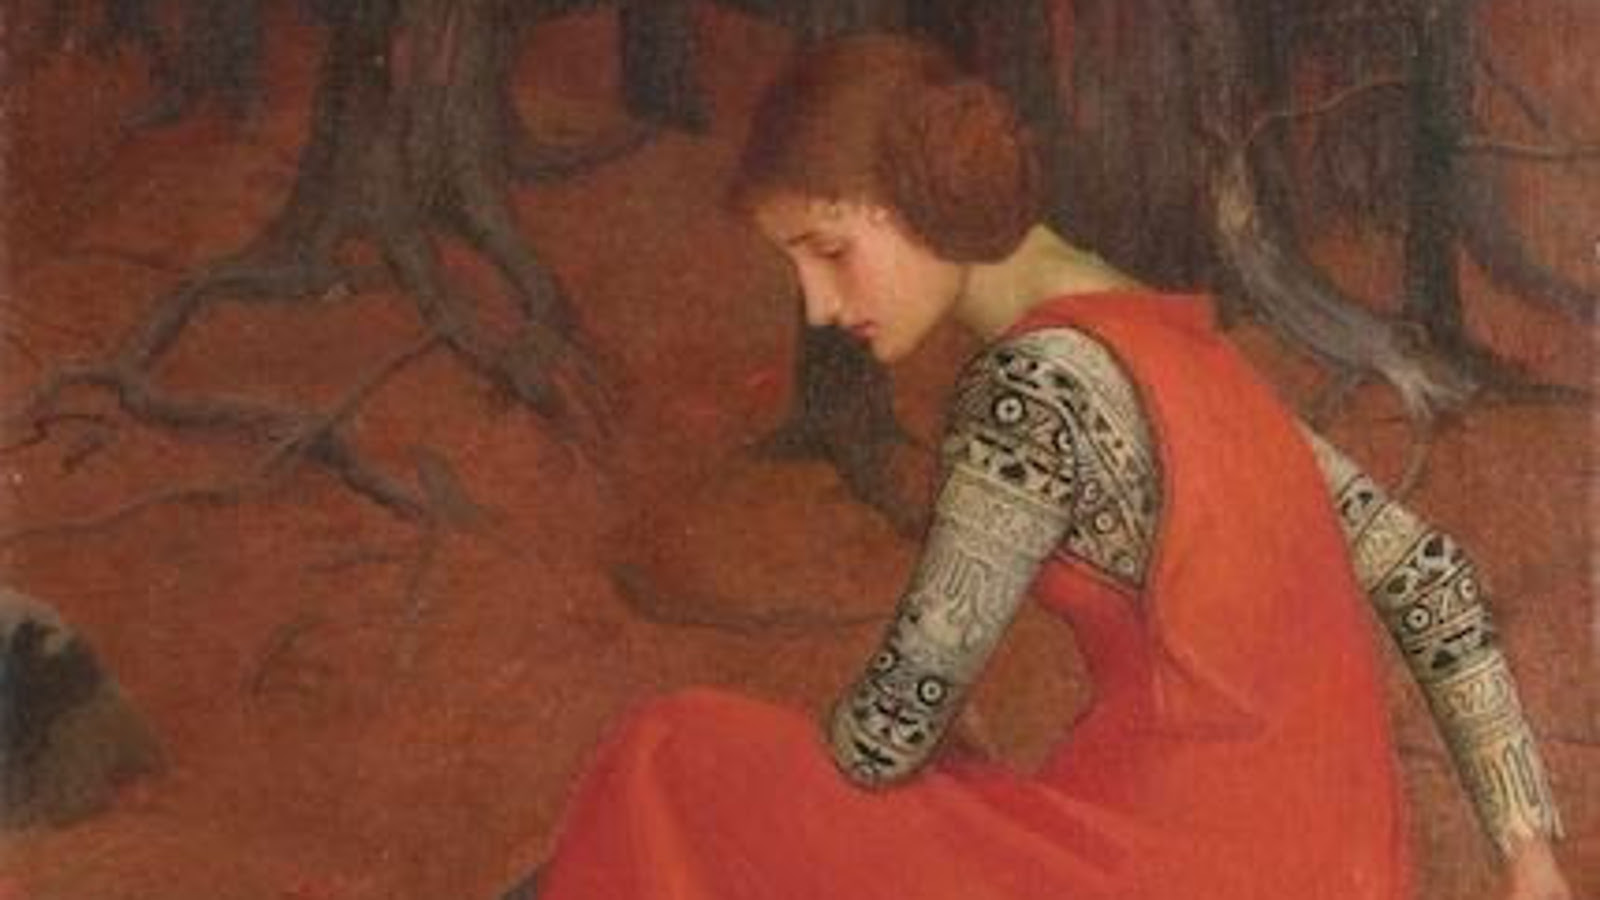 Kuvassa on nuori nainen istumassa ja on muratuneena sivuttain vasemmalla. Hänellä on punainen hihaton mekko ja mustan harmaan kirjava pusero. Taustalla punaisen ruskeaa maastoa ja oksia.